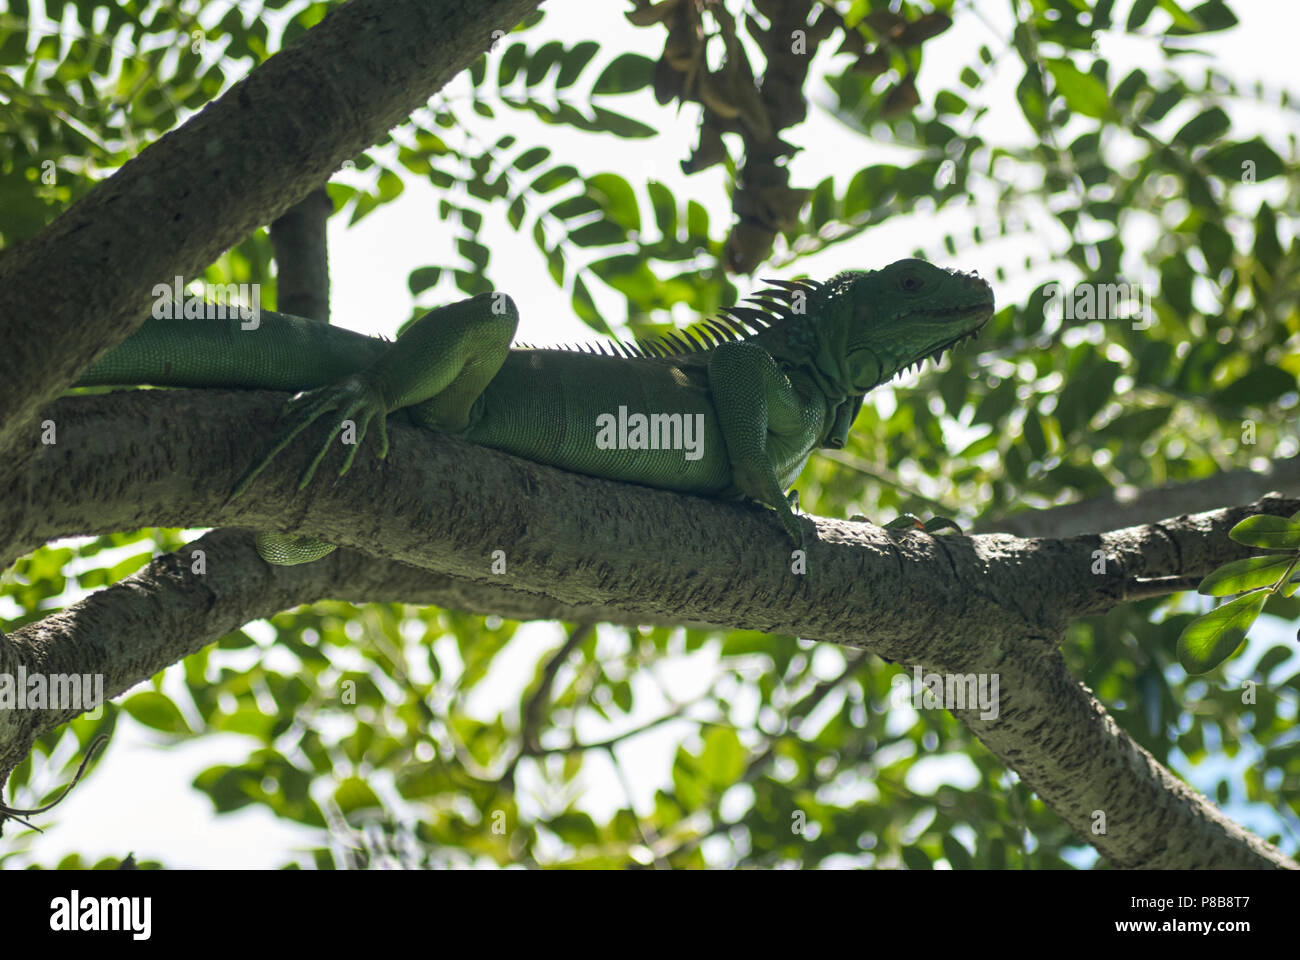 La Iguana (Iguana iguana), également appelé American iguane, sur une branche d'arbre. Banque D'Images